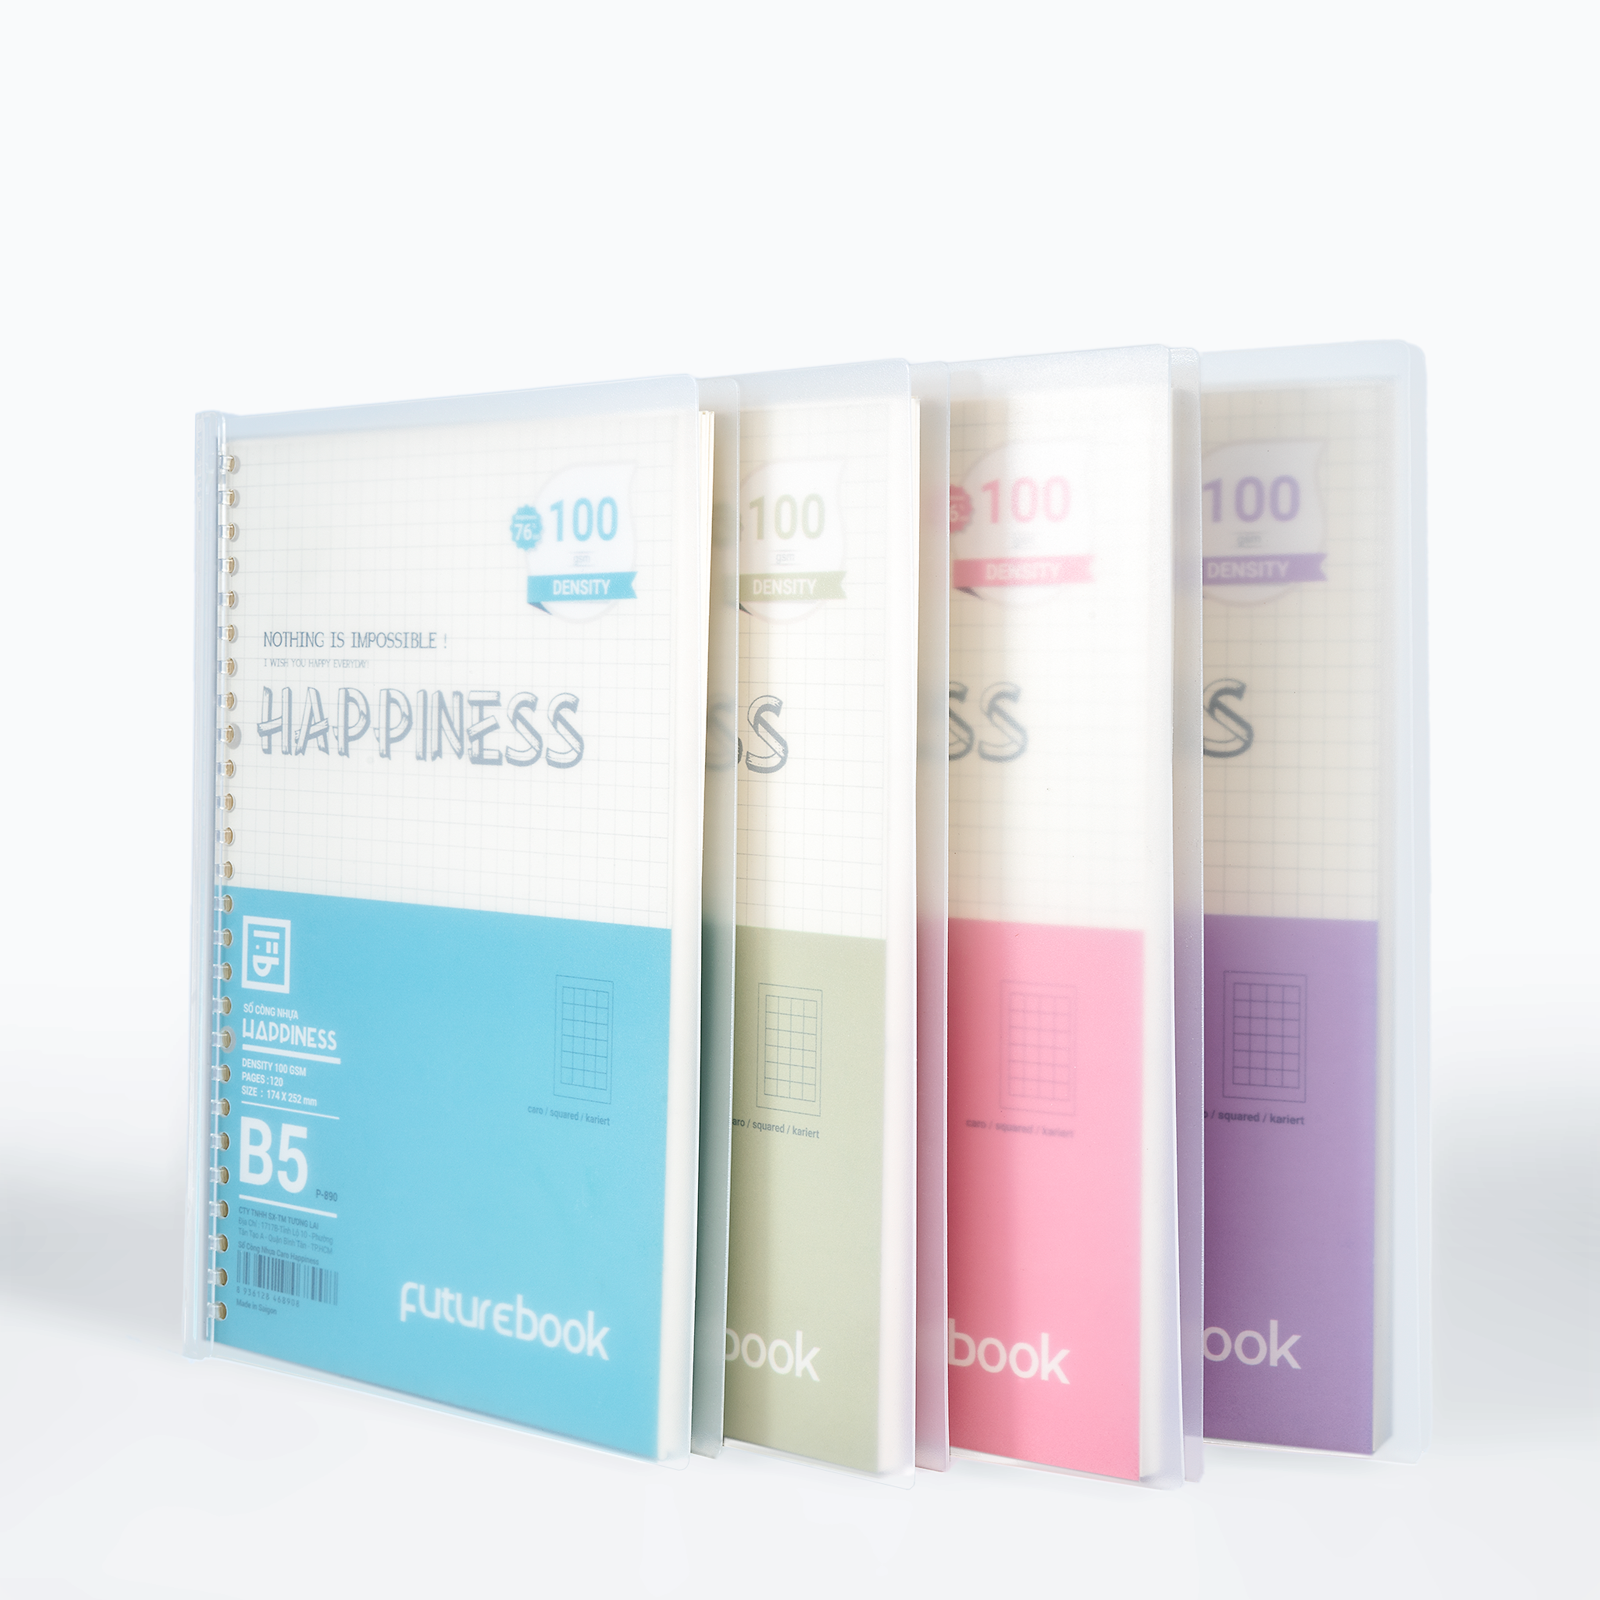 Sổ còng nhựa Happiness B5 20 chấu kèm ruột giấy refill  làm sổ tay planner phong cách hàn quốc FUTUREBOOK 890/892